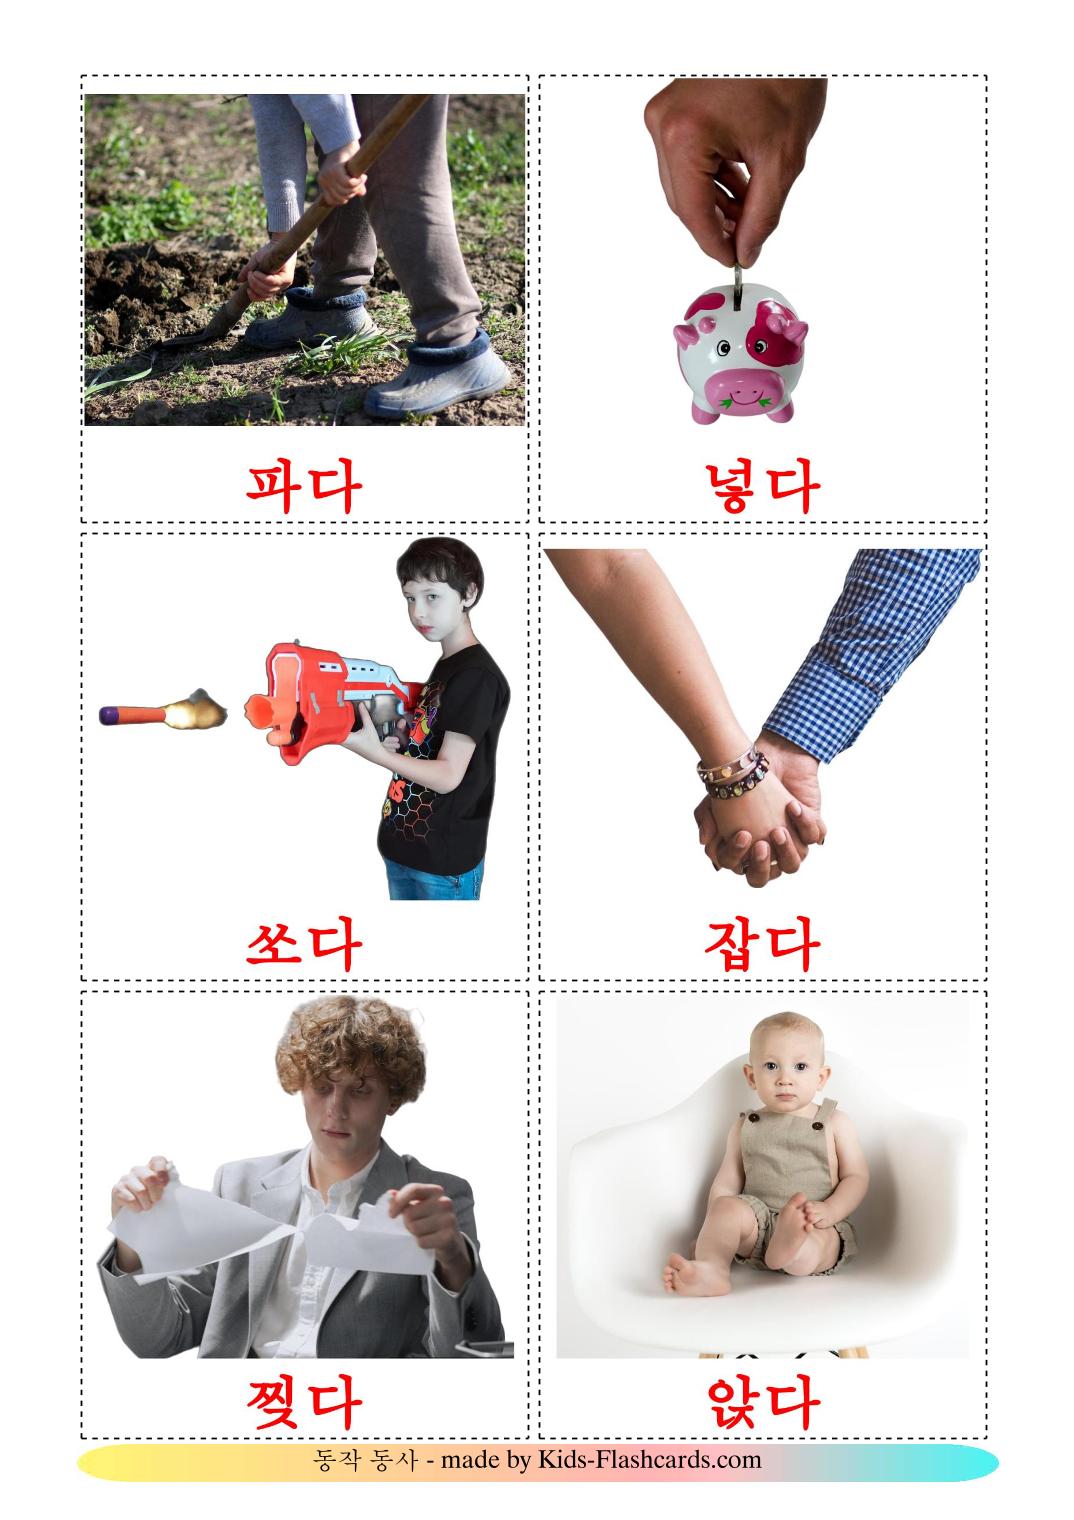 Les Verbes d'Action - 54 Flashcards coréen imprimables gratuitement